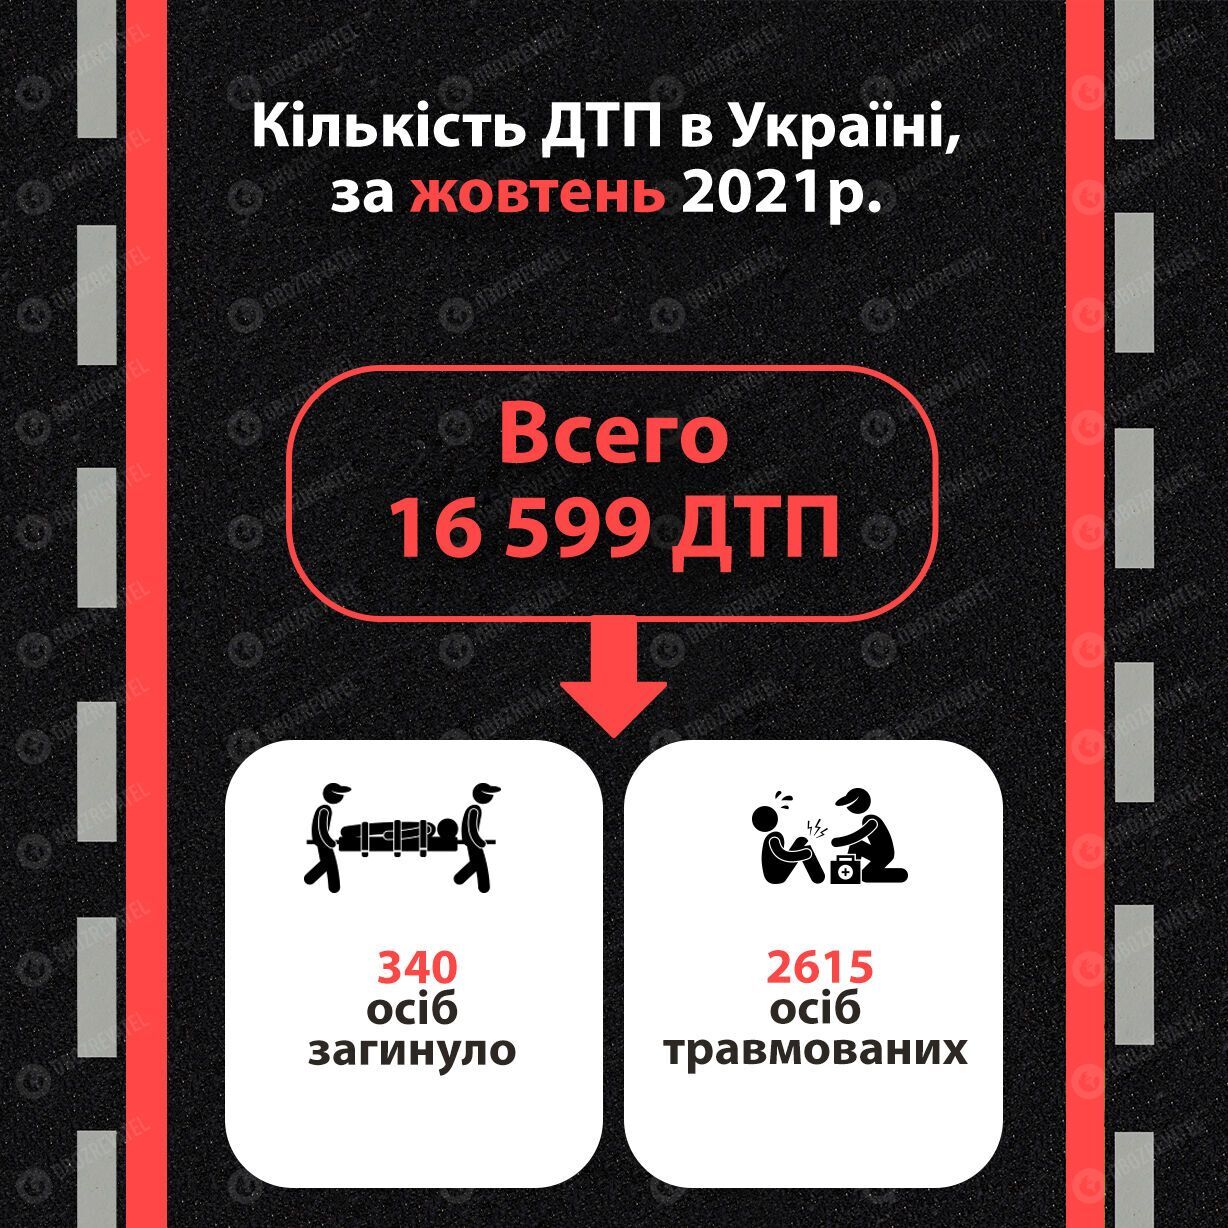 Статистика ДТП в Україні за жовтень 2021 року